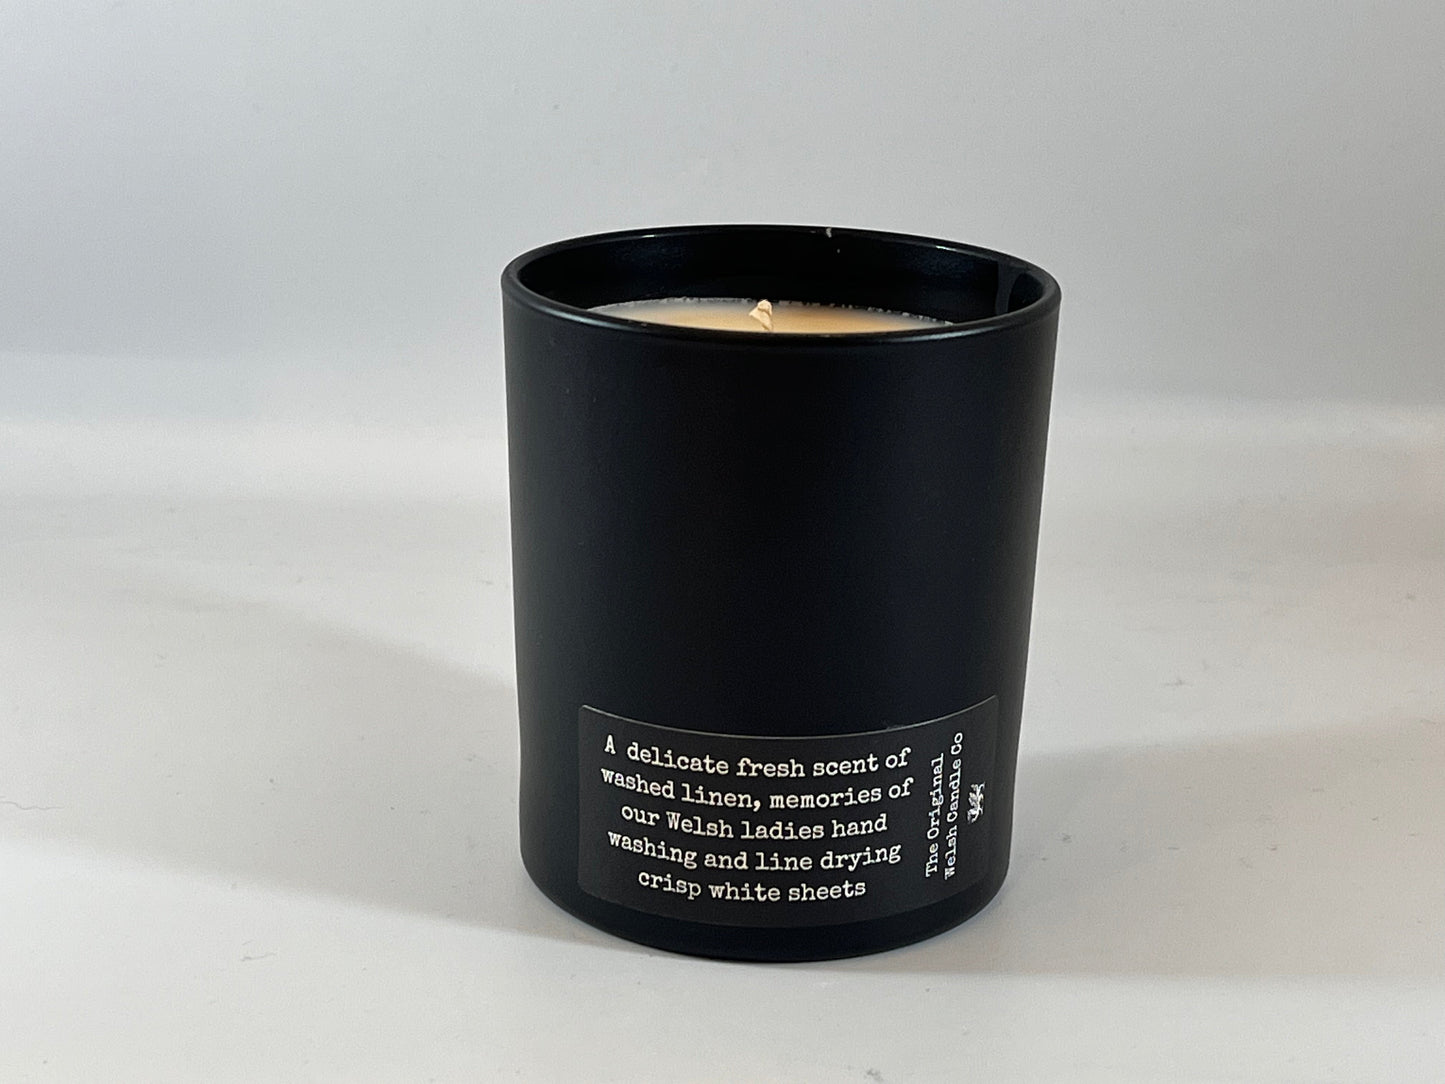 Cwm Rhondda glass jar candle 30cl - fragranced with Fresh Linen